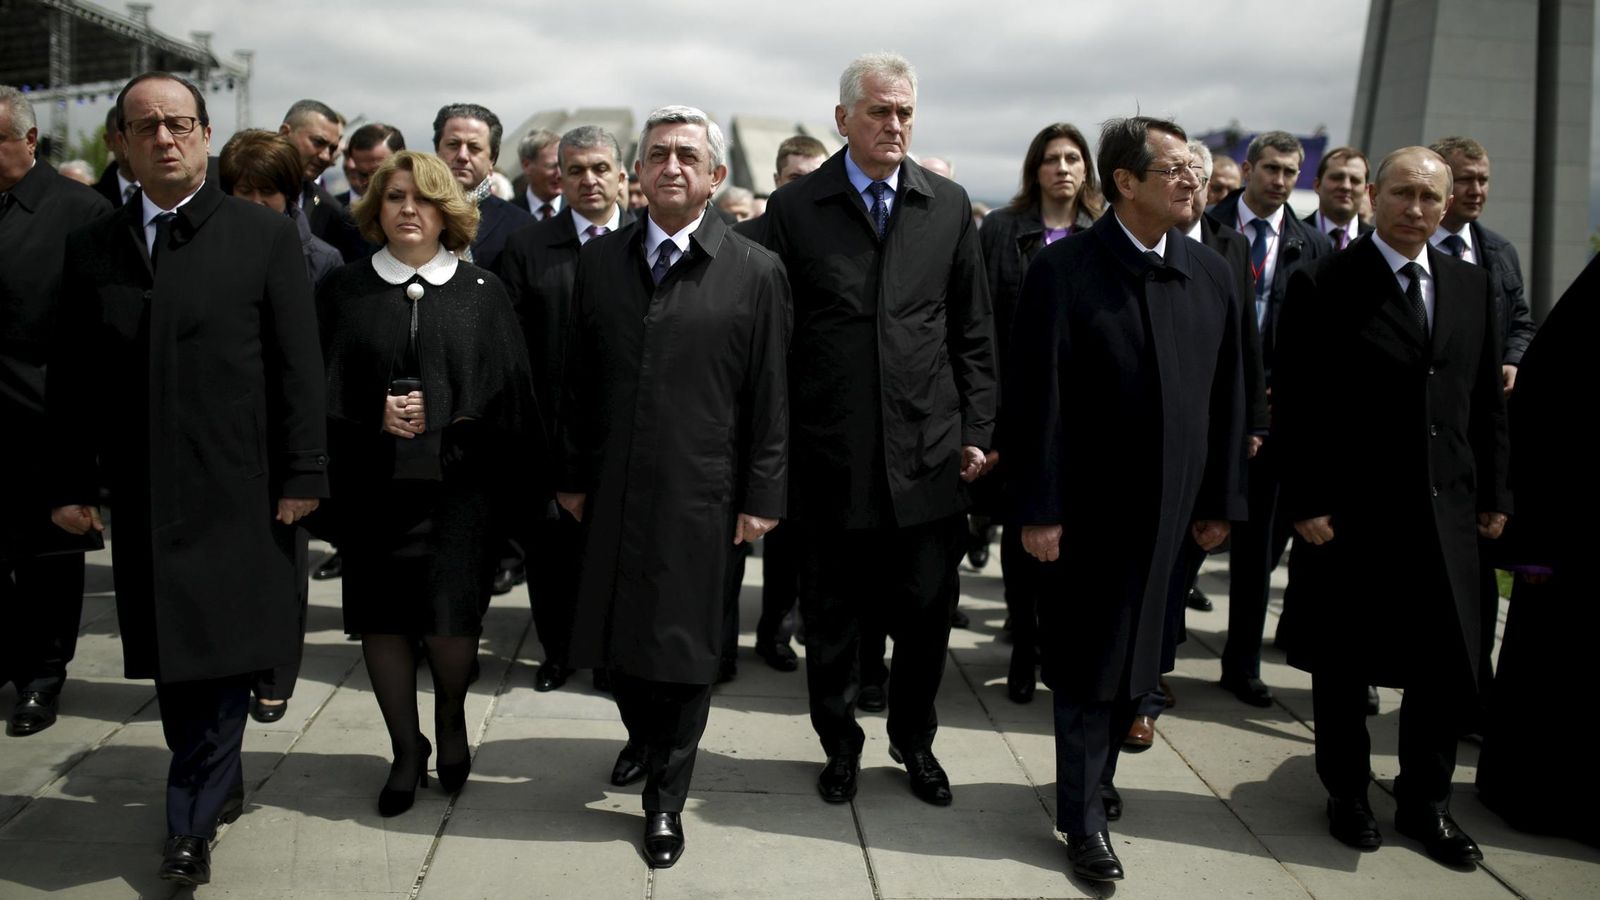 Foto: El serbio Tomislav Nikolic con otros jefes de Estado (Reuters)